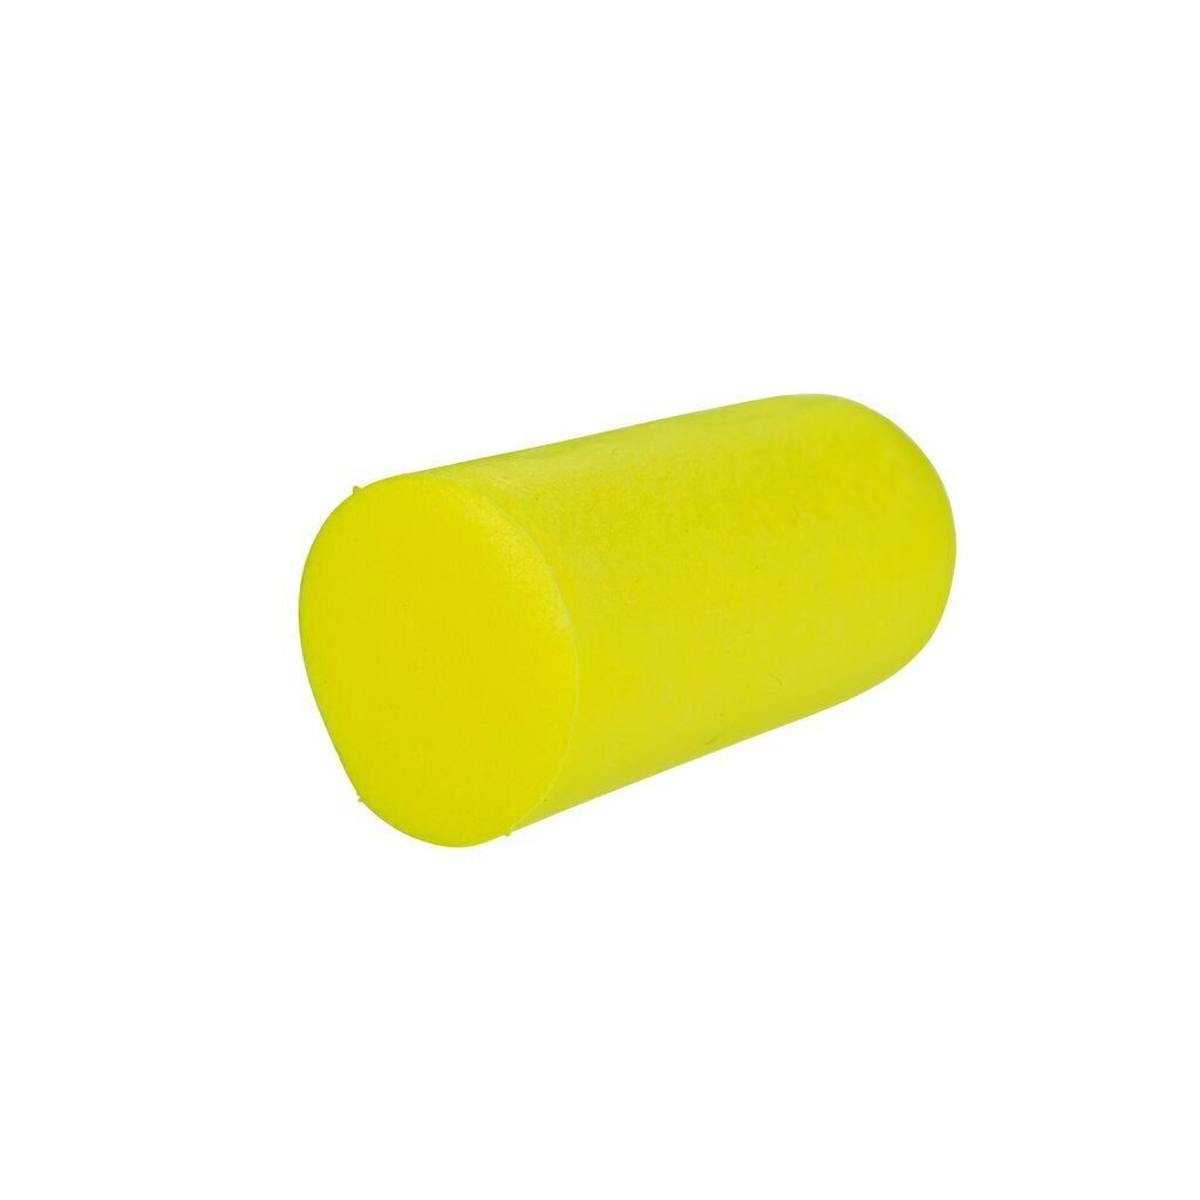 3M E-A-R Neones Amarillos Blandos, poliuretano, flexibles y cómodos, por pares en bolsa de polietileno, amarillo neón, SNR=36 dB, ES01001